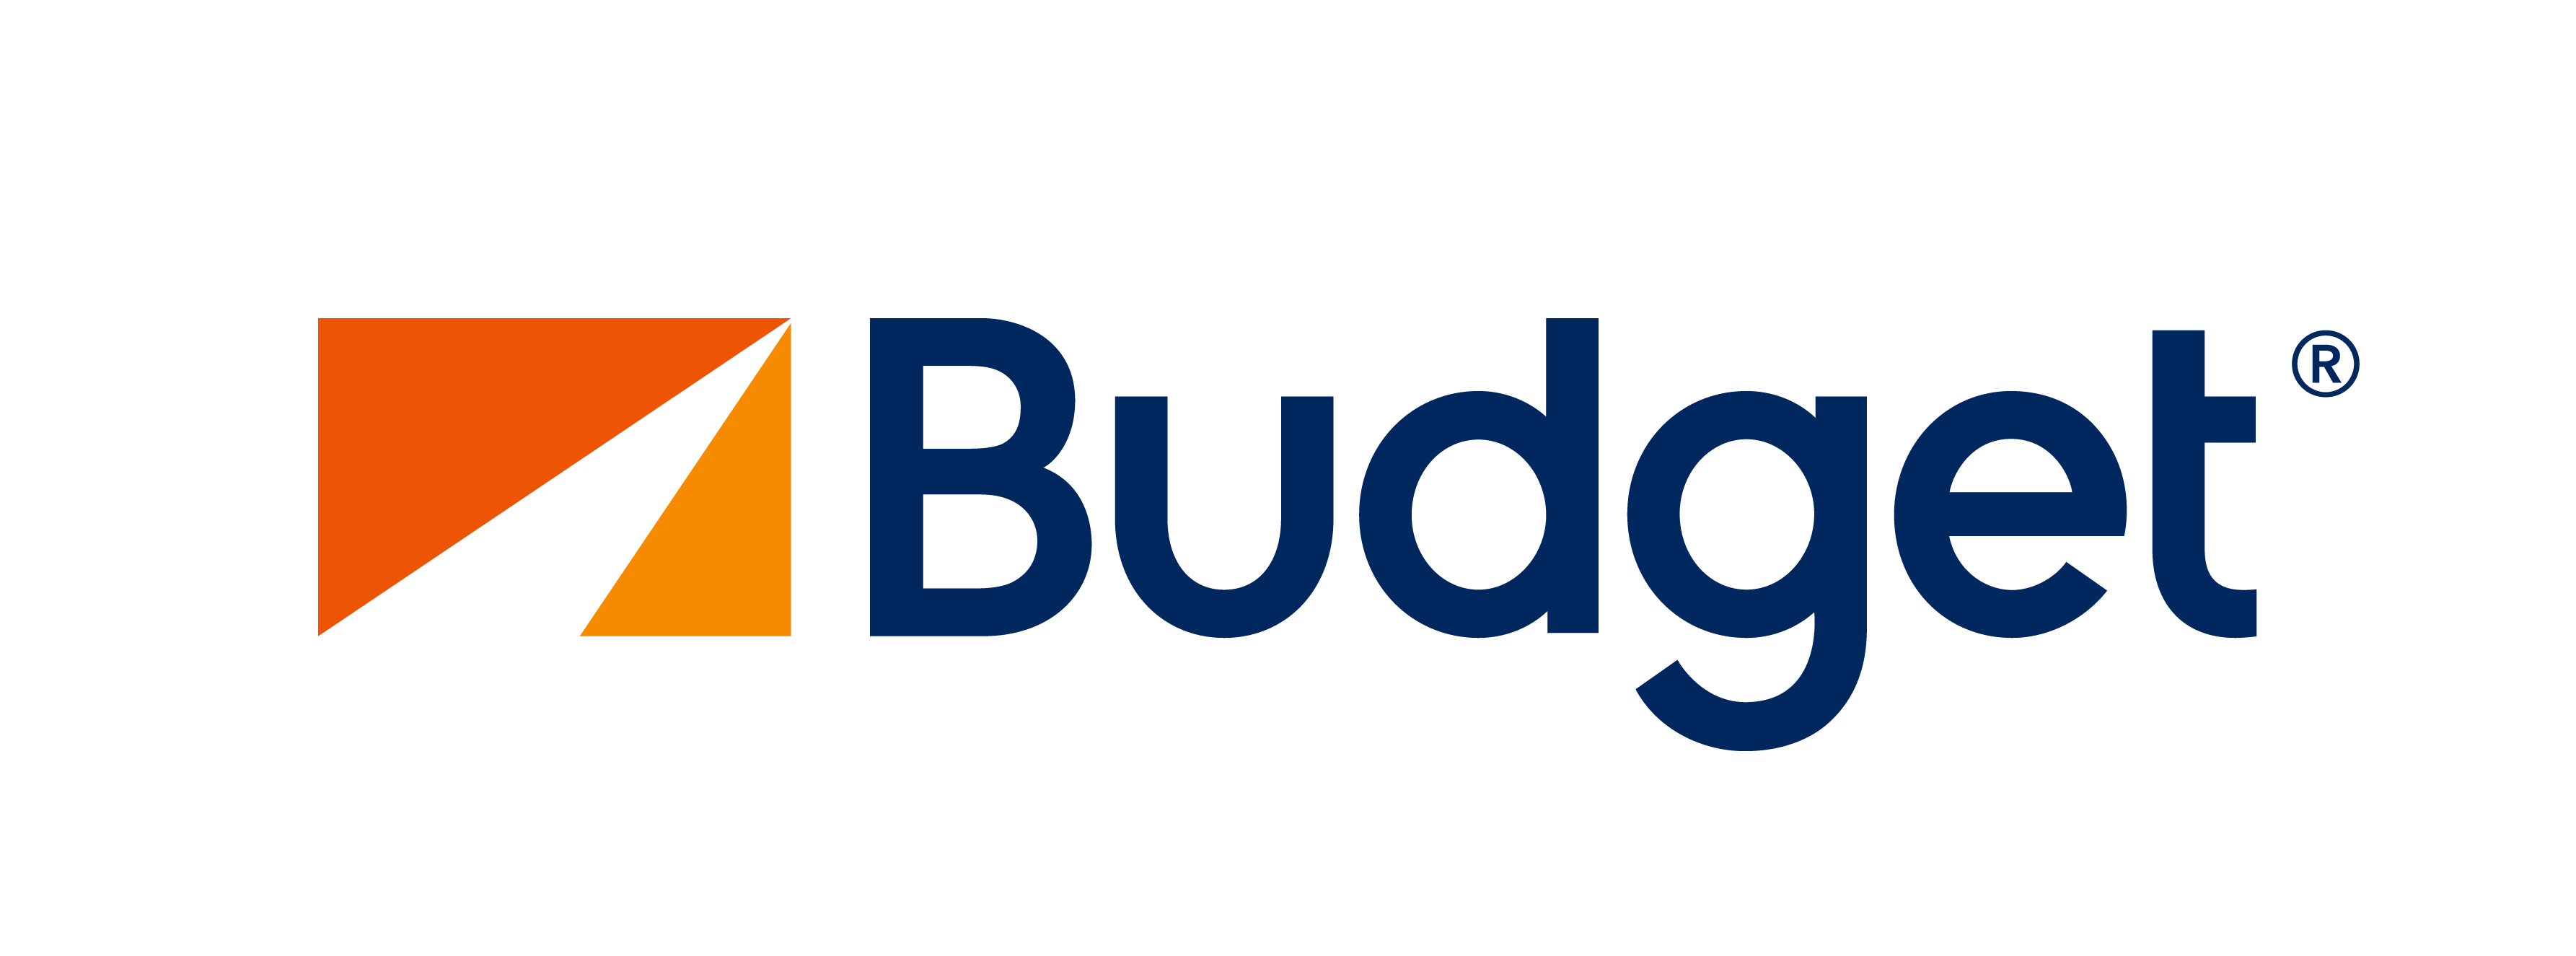 Budgetlogo PNG-Bildhintergrund